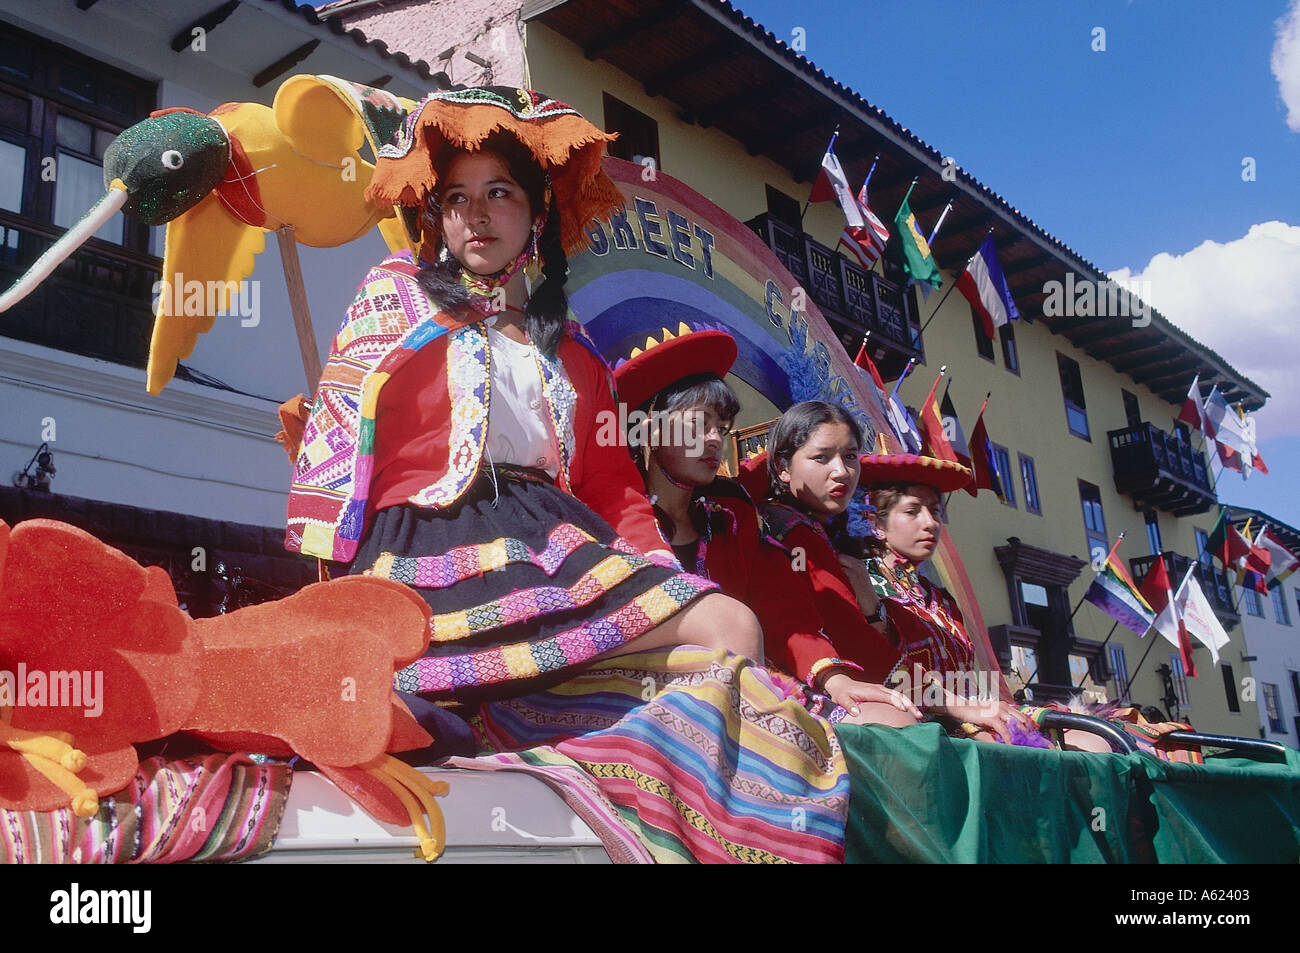 Amérique du Sud PÉROU Cusco femmes en costume traditionnel sur un flotteur de procession lors d'Inti Raymi Festival Inca du Soleil Banque D'Images